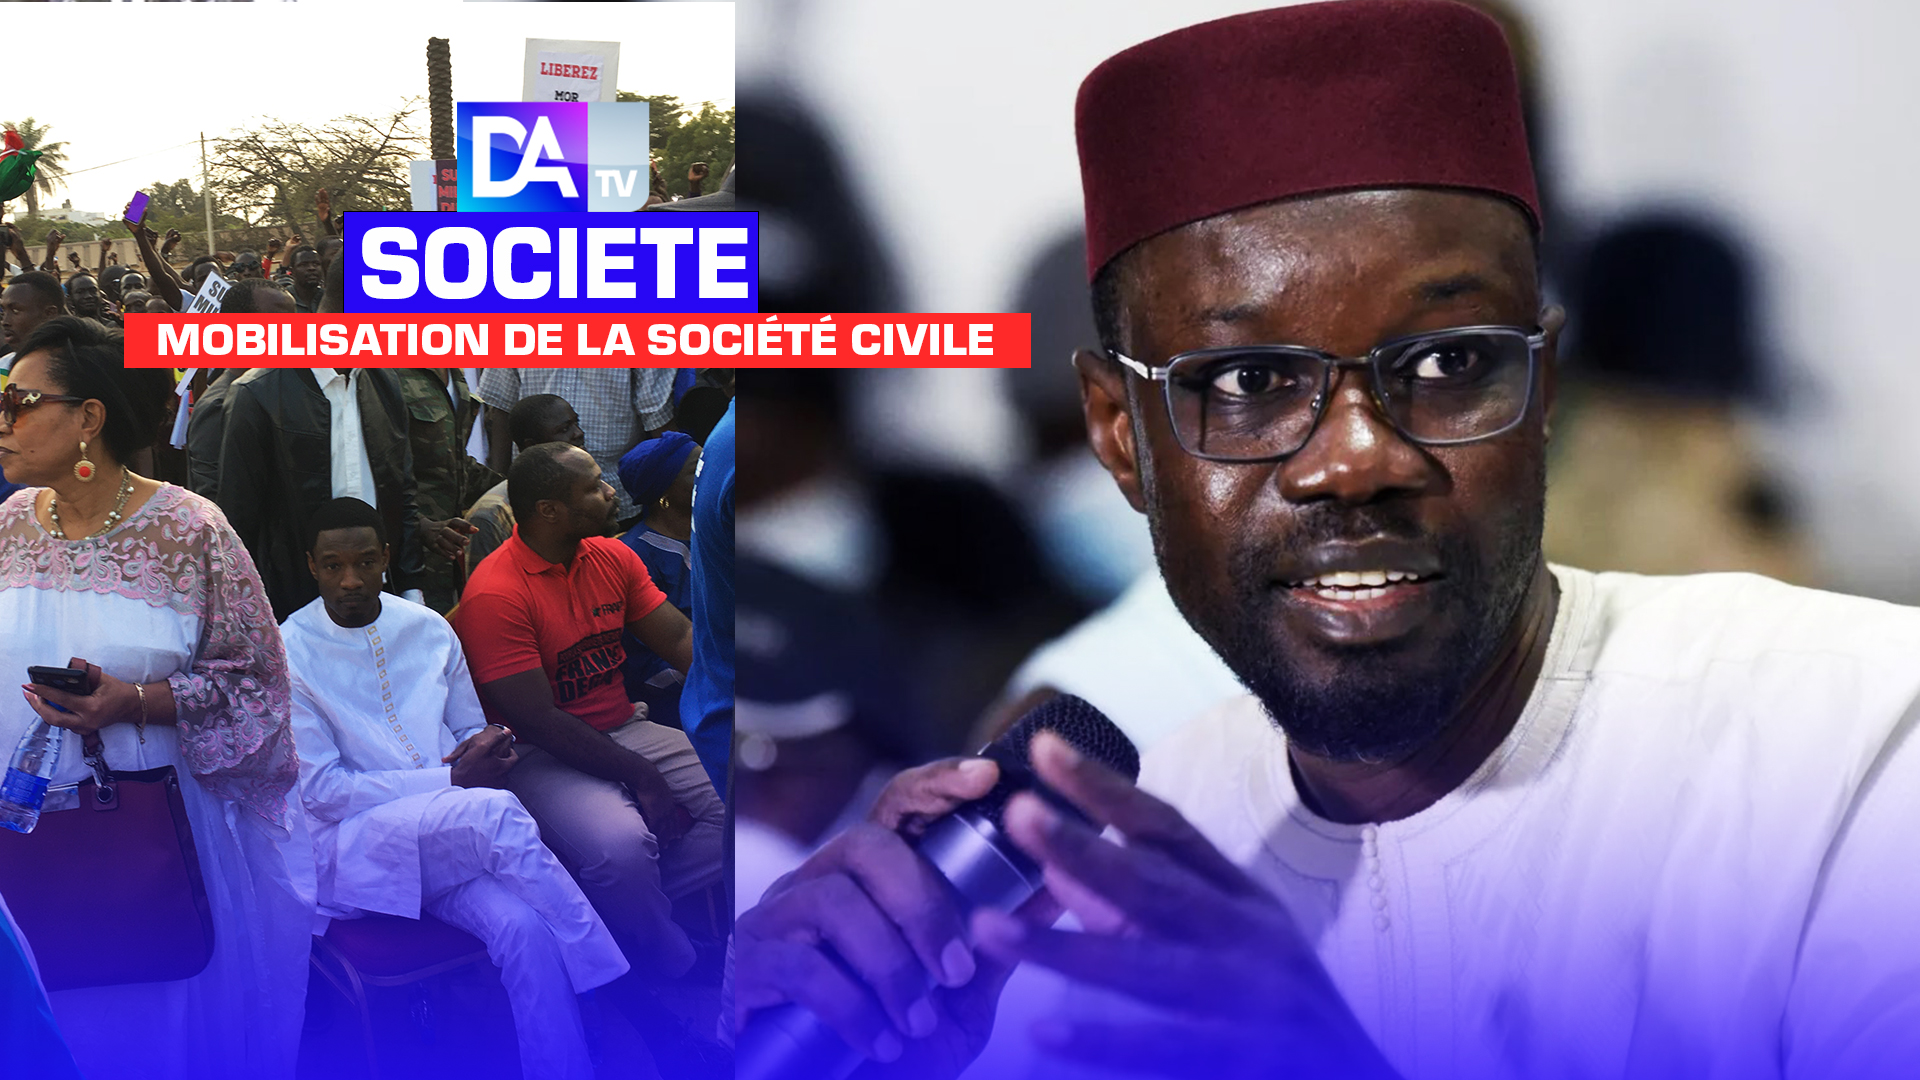 Mobilisation de la société civile : Ousmane Sonko déplore l’incident dont a été victime Pape Djibril Fall et invite à l’unité